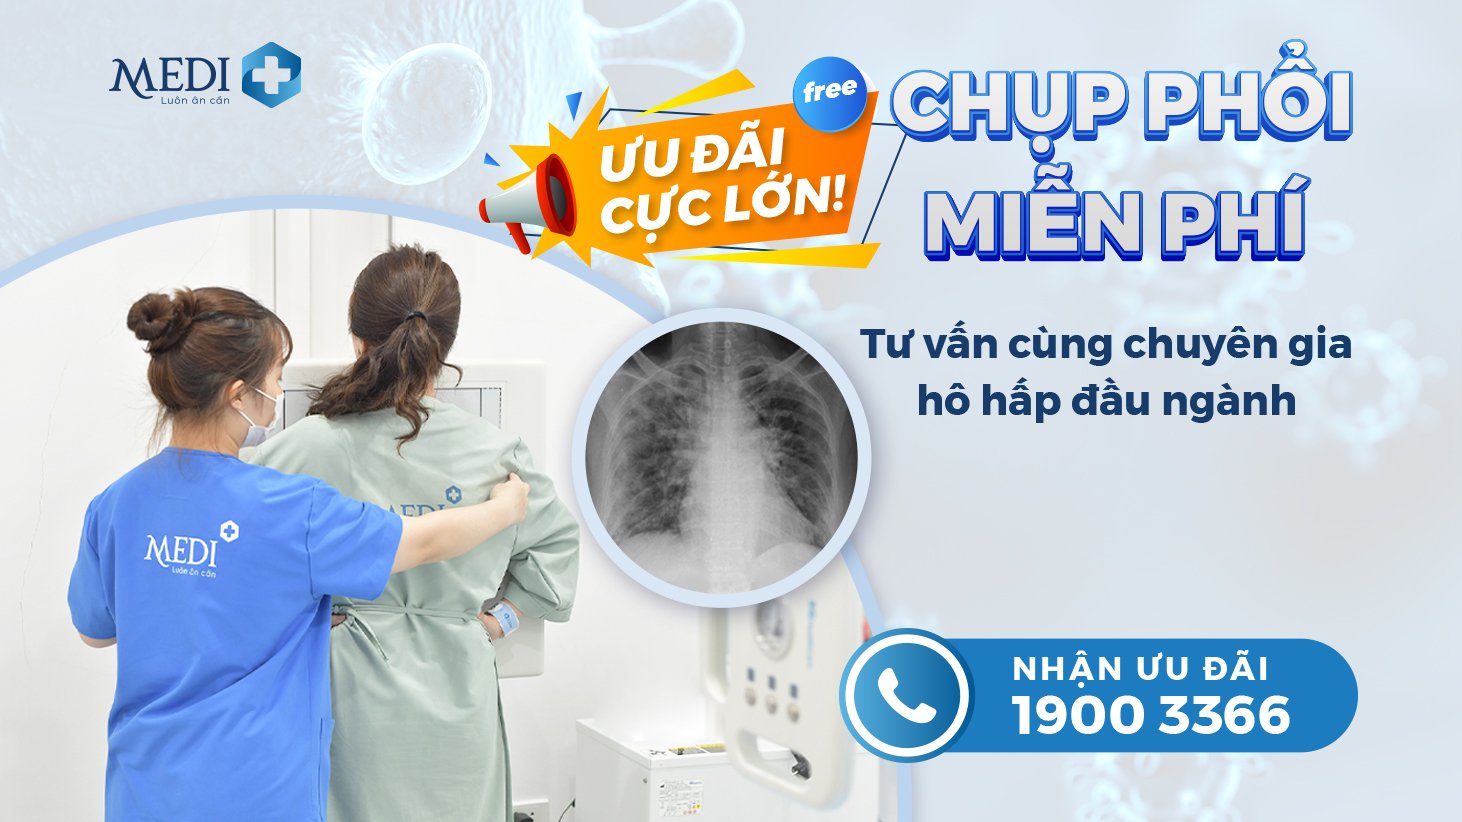 Miễn phí chụp phổi khi khám với chuyên gia hô hấp